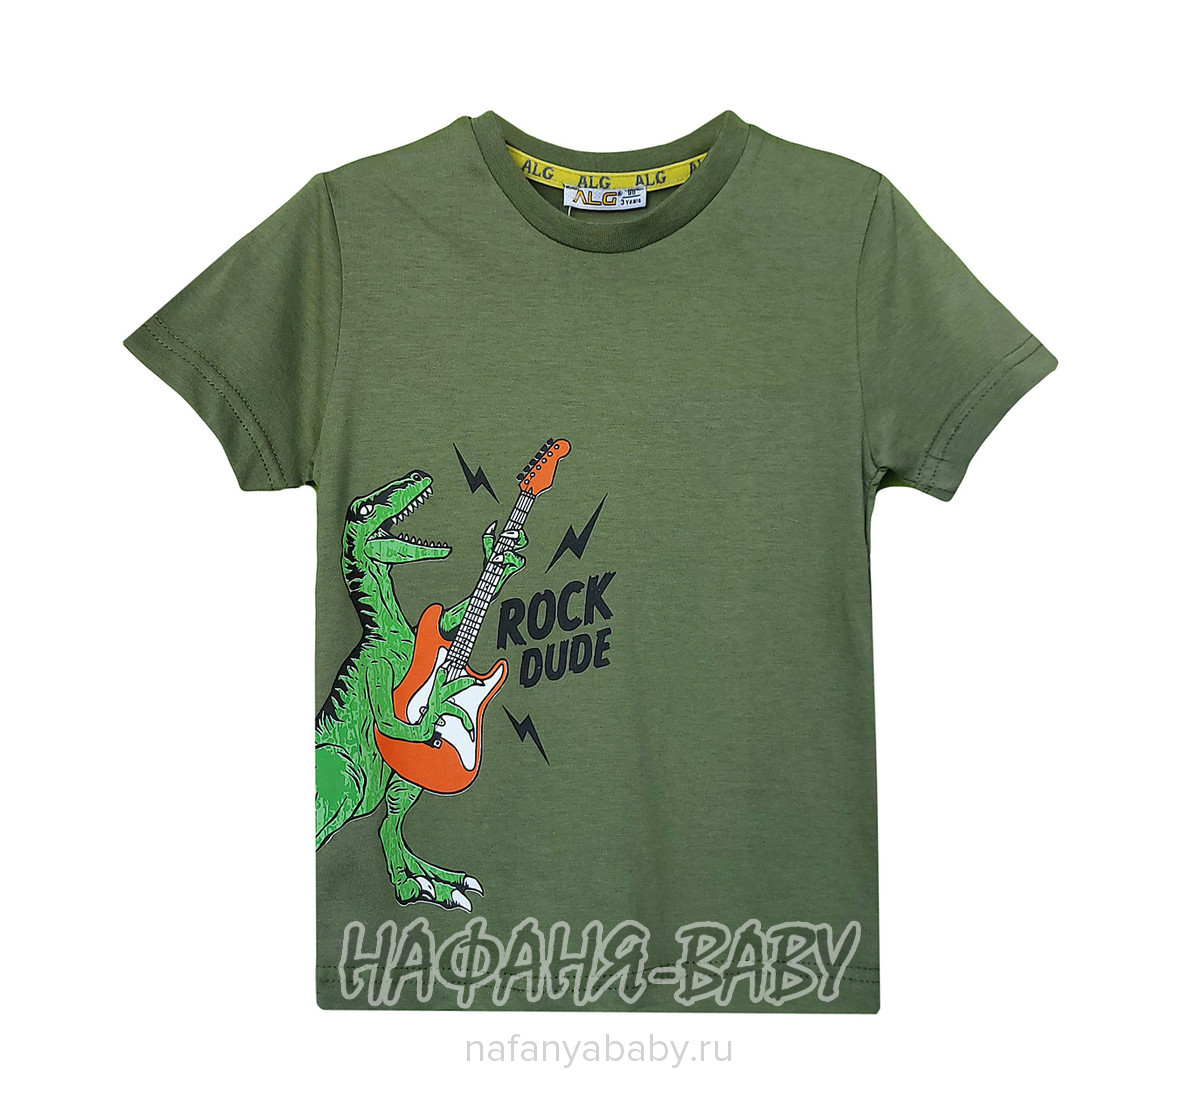 Детская футболка ALG арт: 222614, 1-4 года, 5-9 лет, цвет дымчато-зеленый хаки, оптом Турция